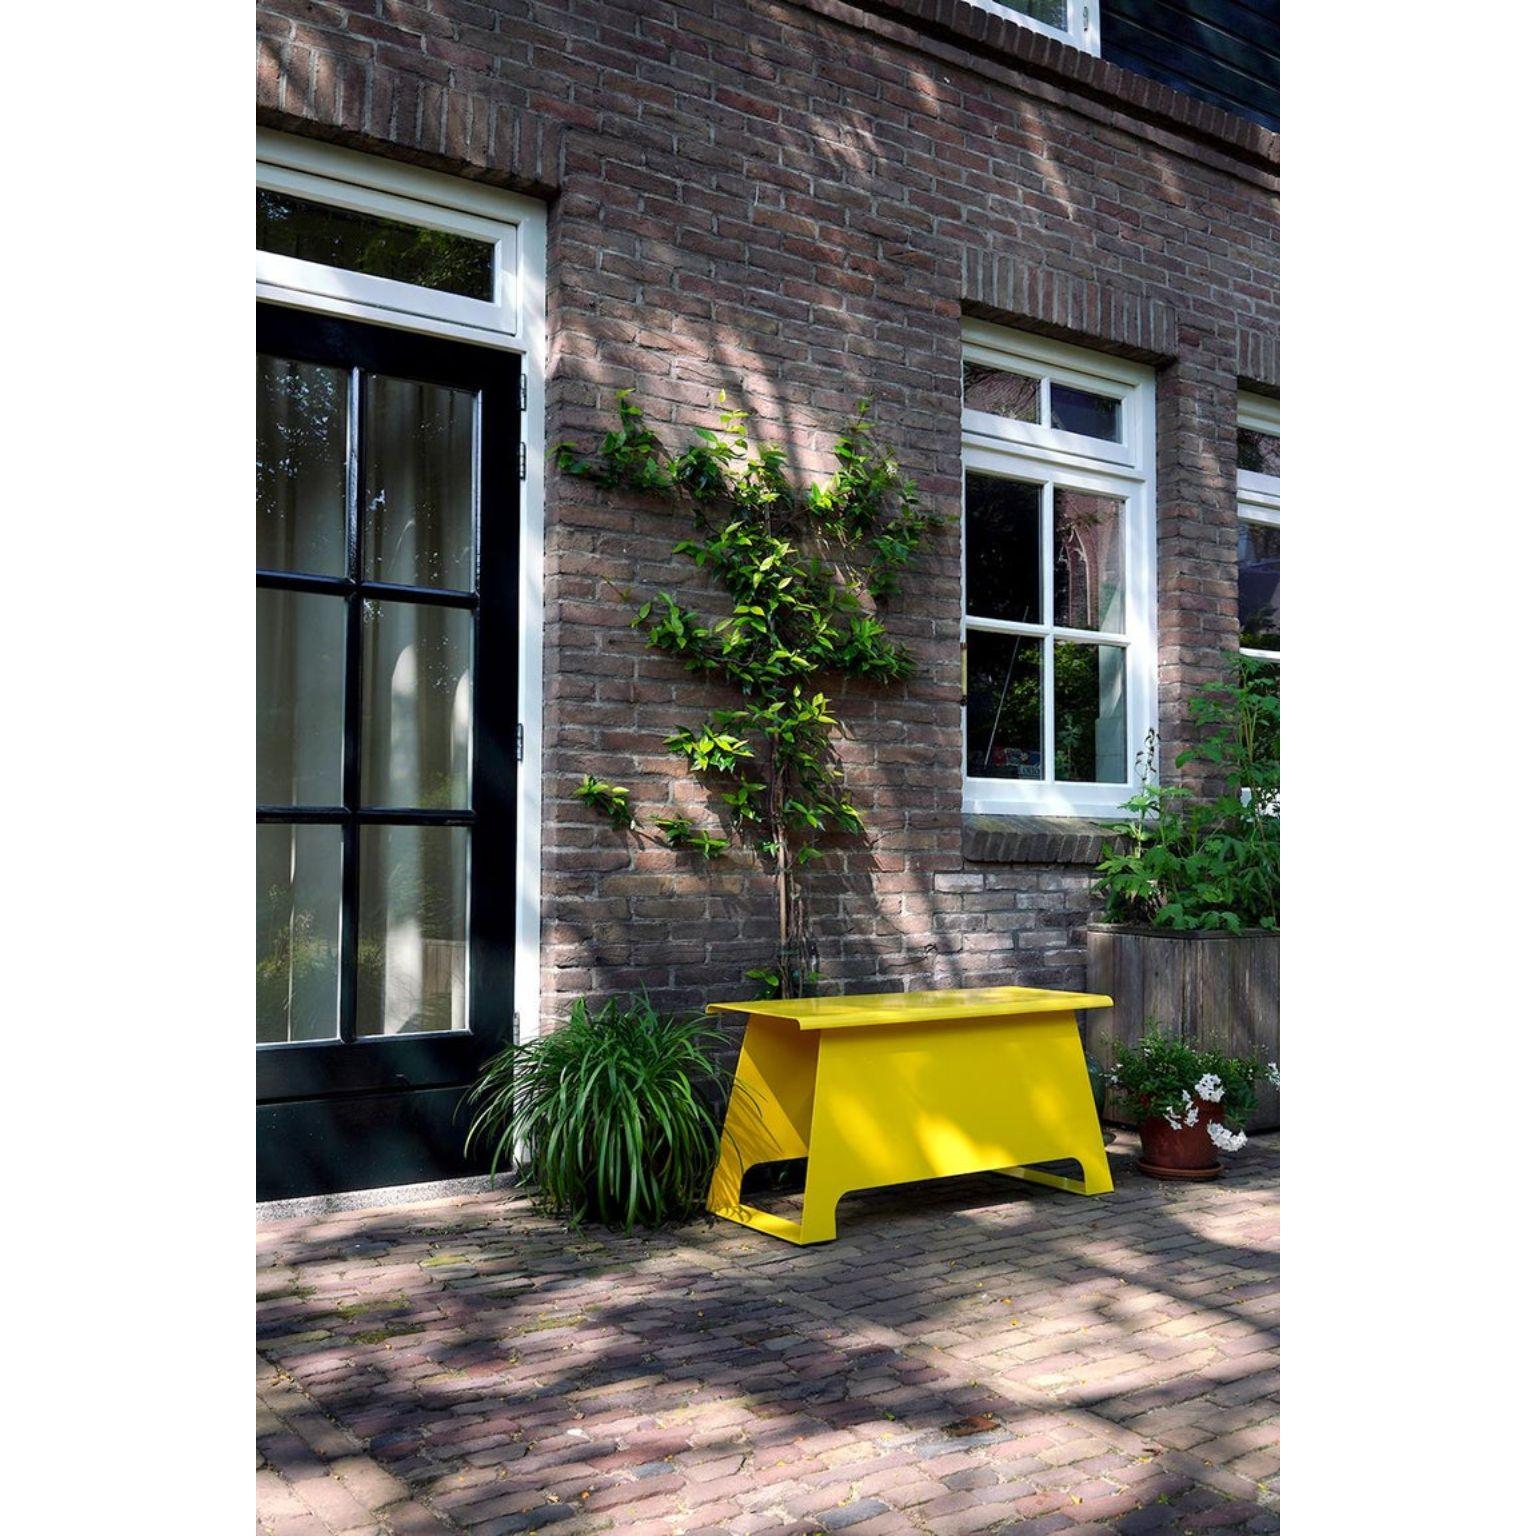 The Old School 100 Yellow Bench by Harm De Veer 8